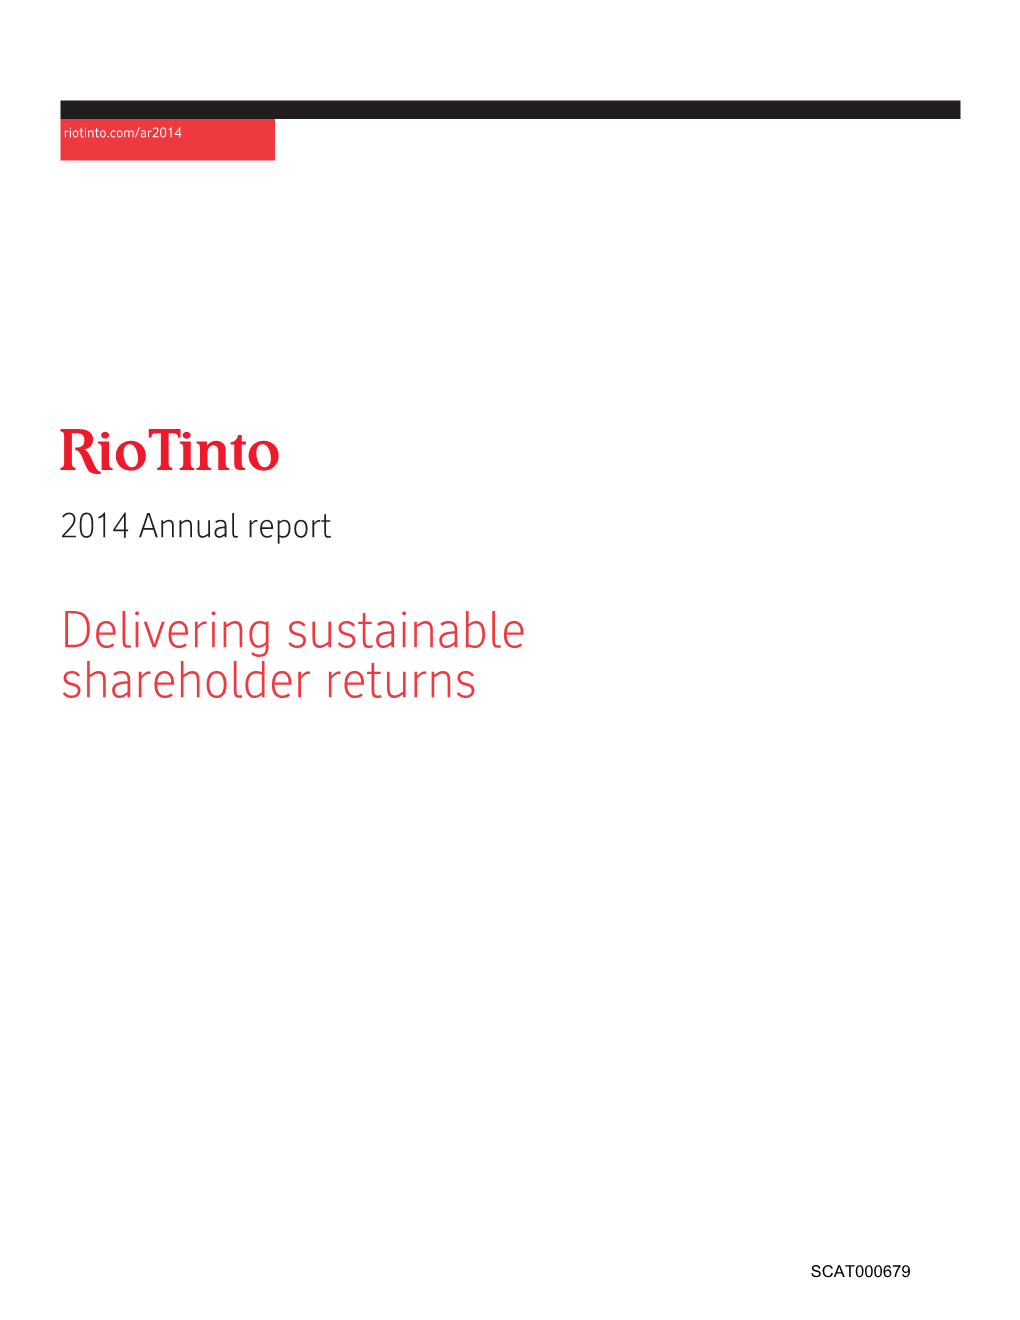 Rio Tinto Annual Report 2014